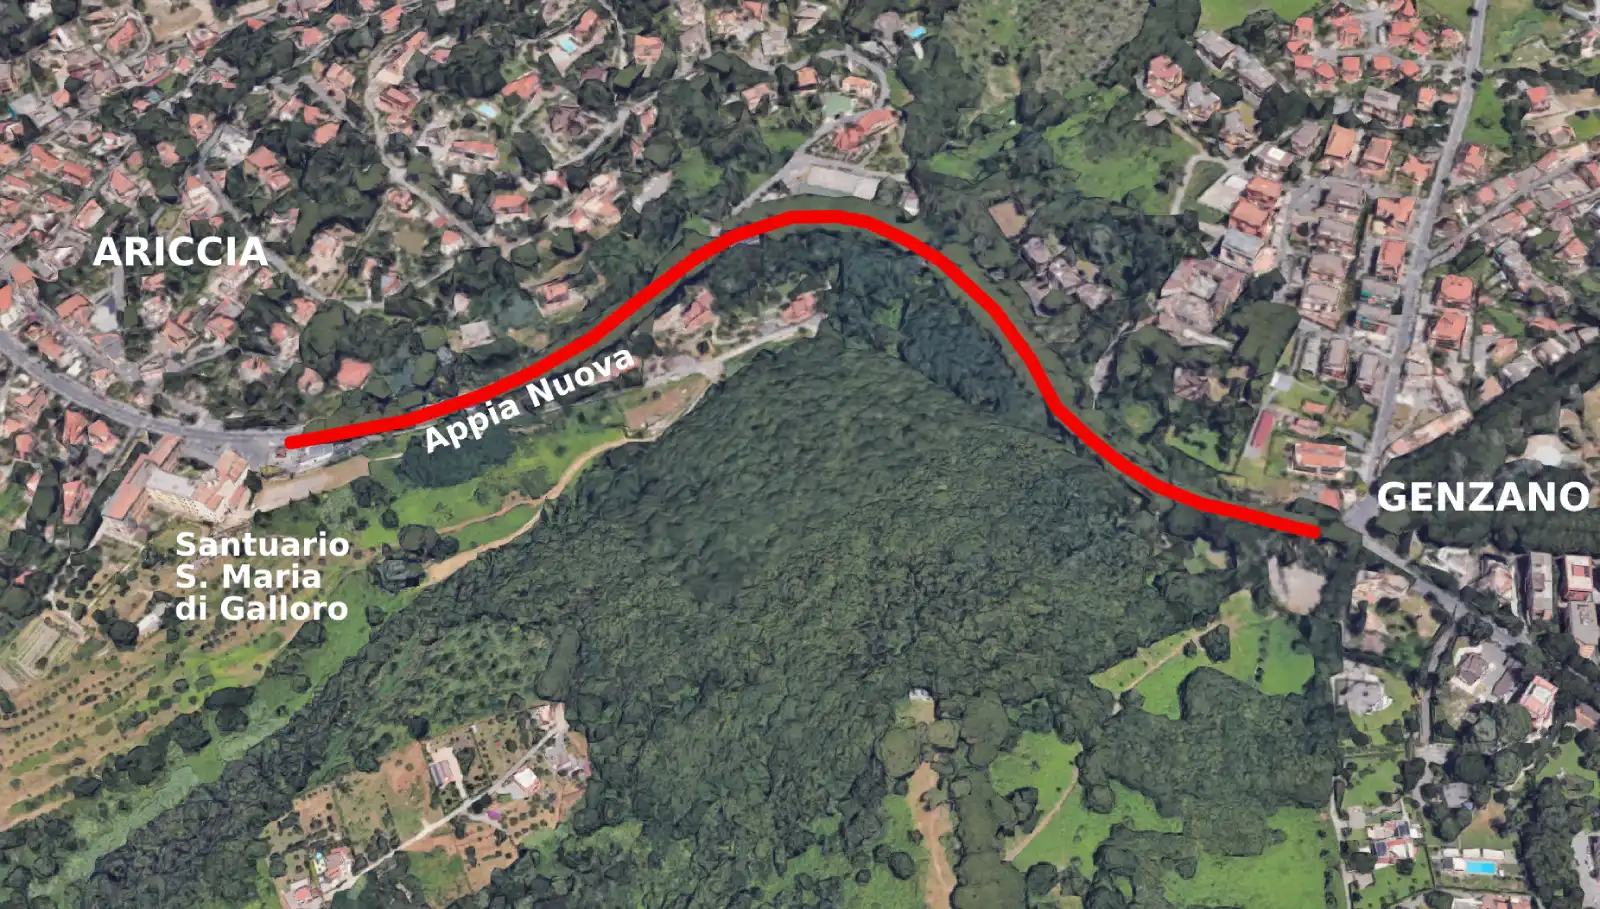 Mappa tratto stradale Appia Nuova tra Ariccia e Genzano